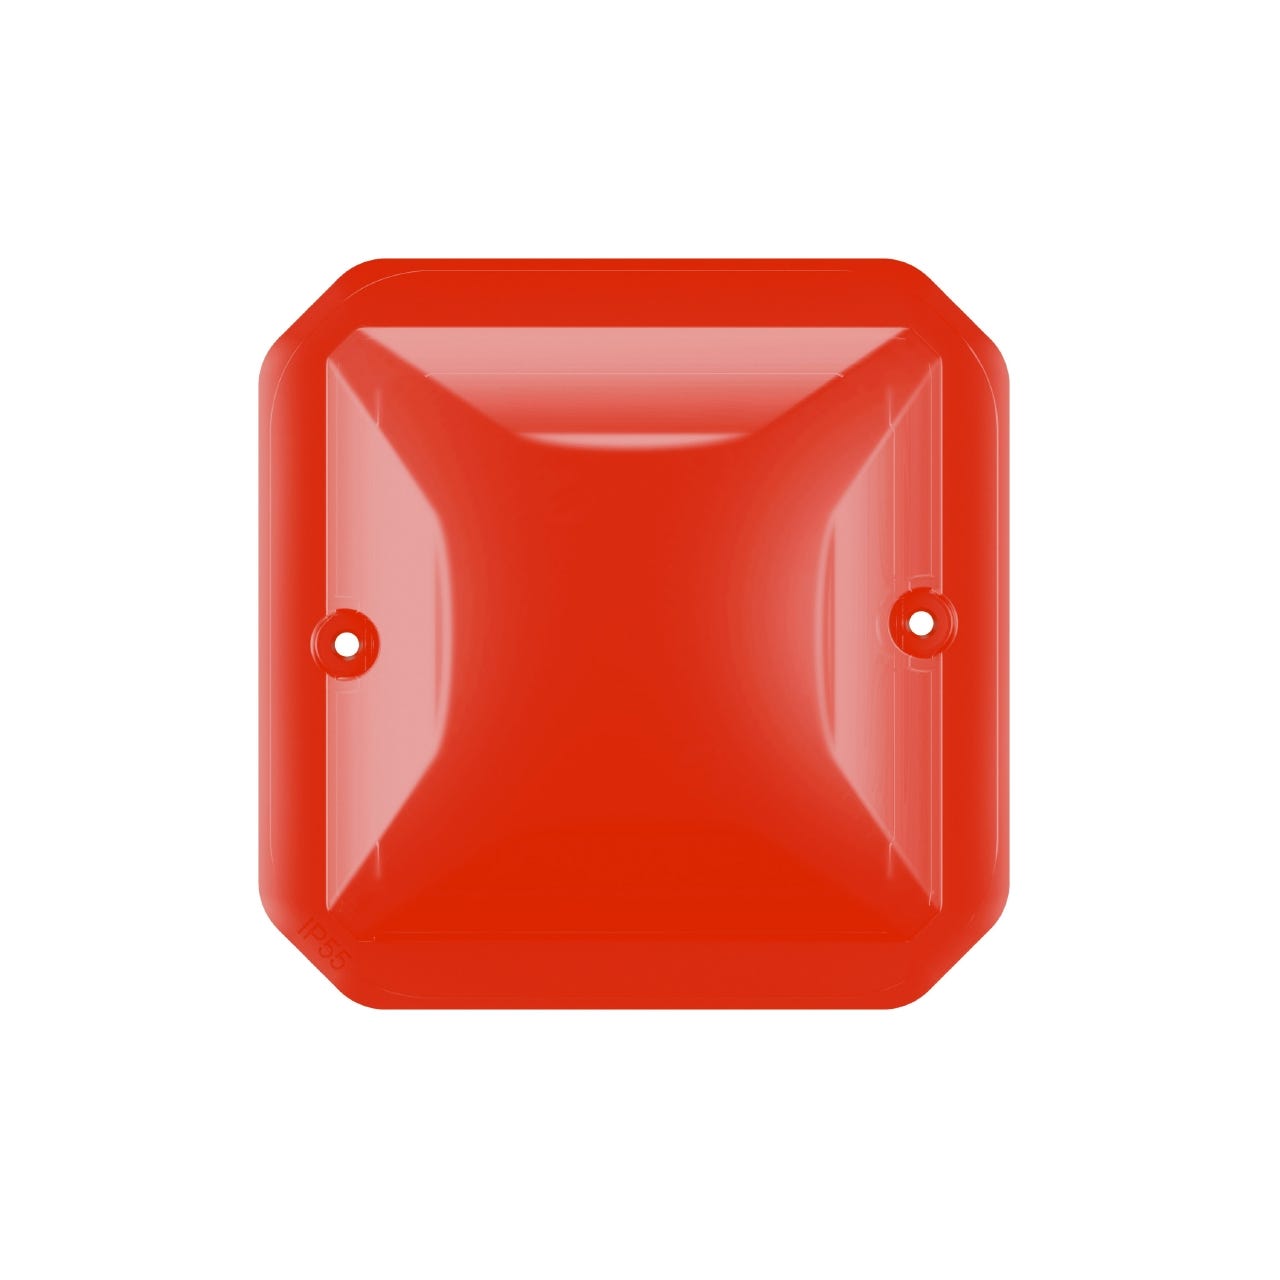 diffuseur lumineux - rouge - composable - legrand plexo 069591l 0